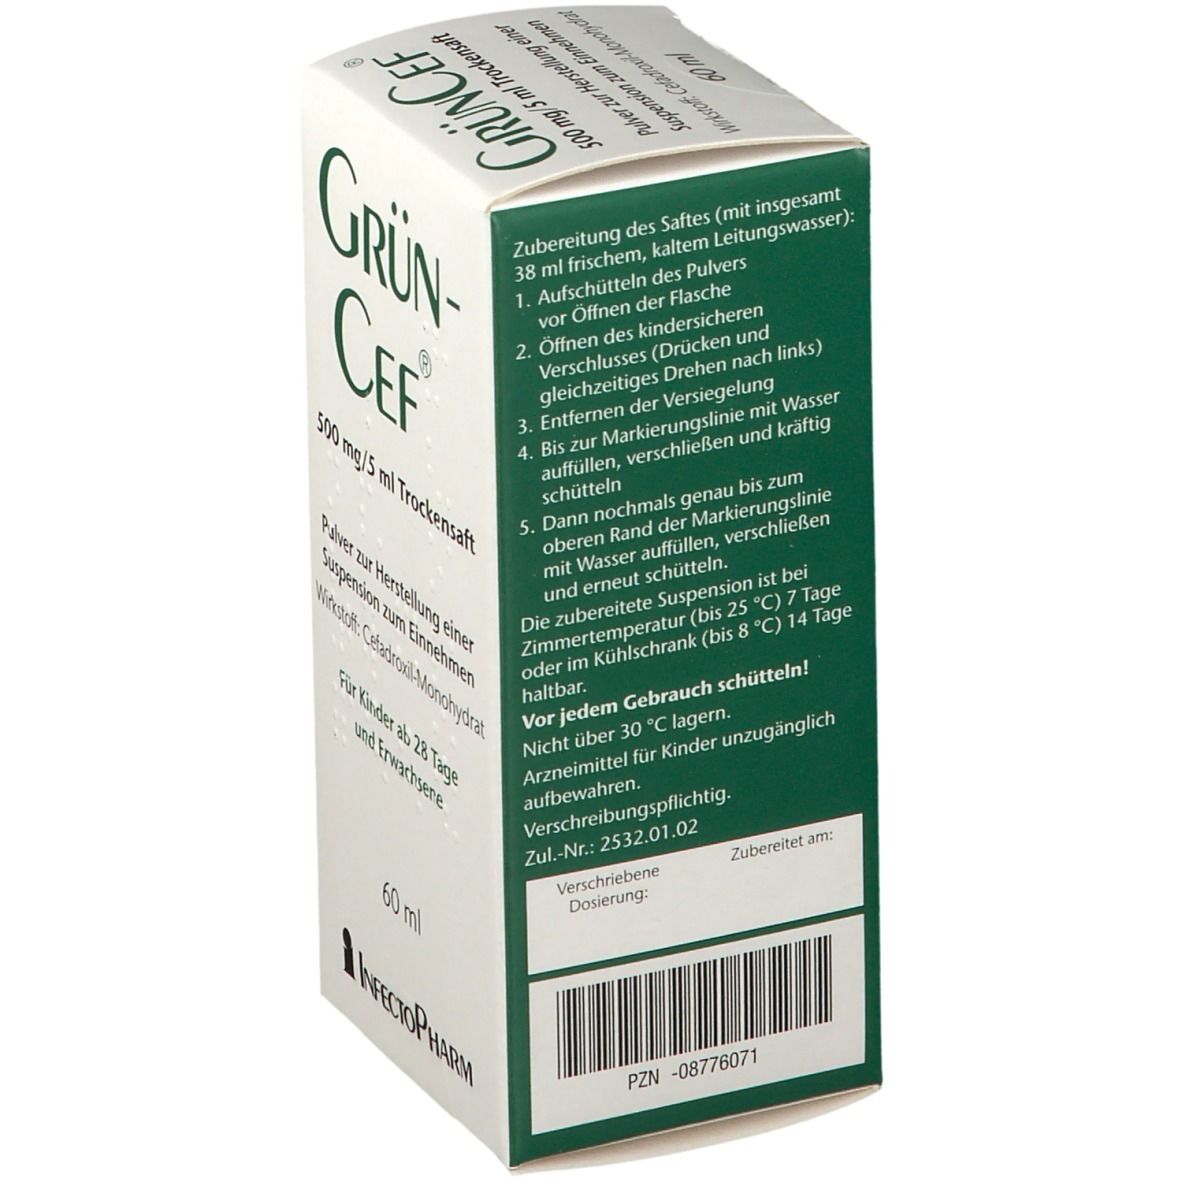 GrünCef® 500 mg/5 ml